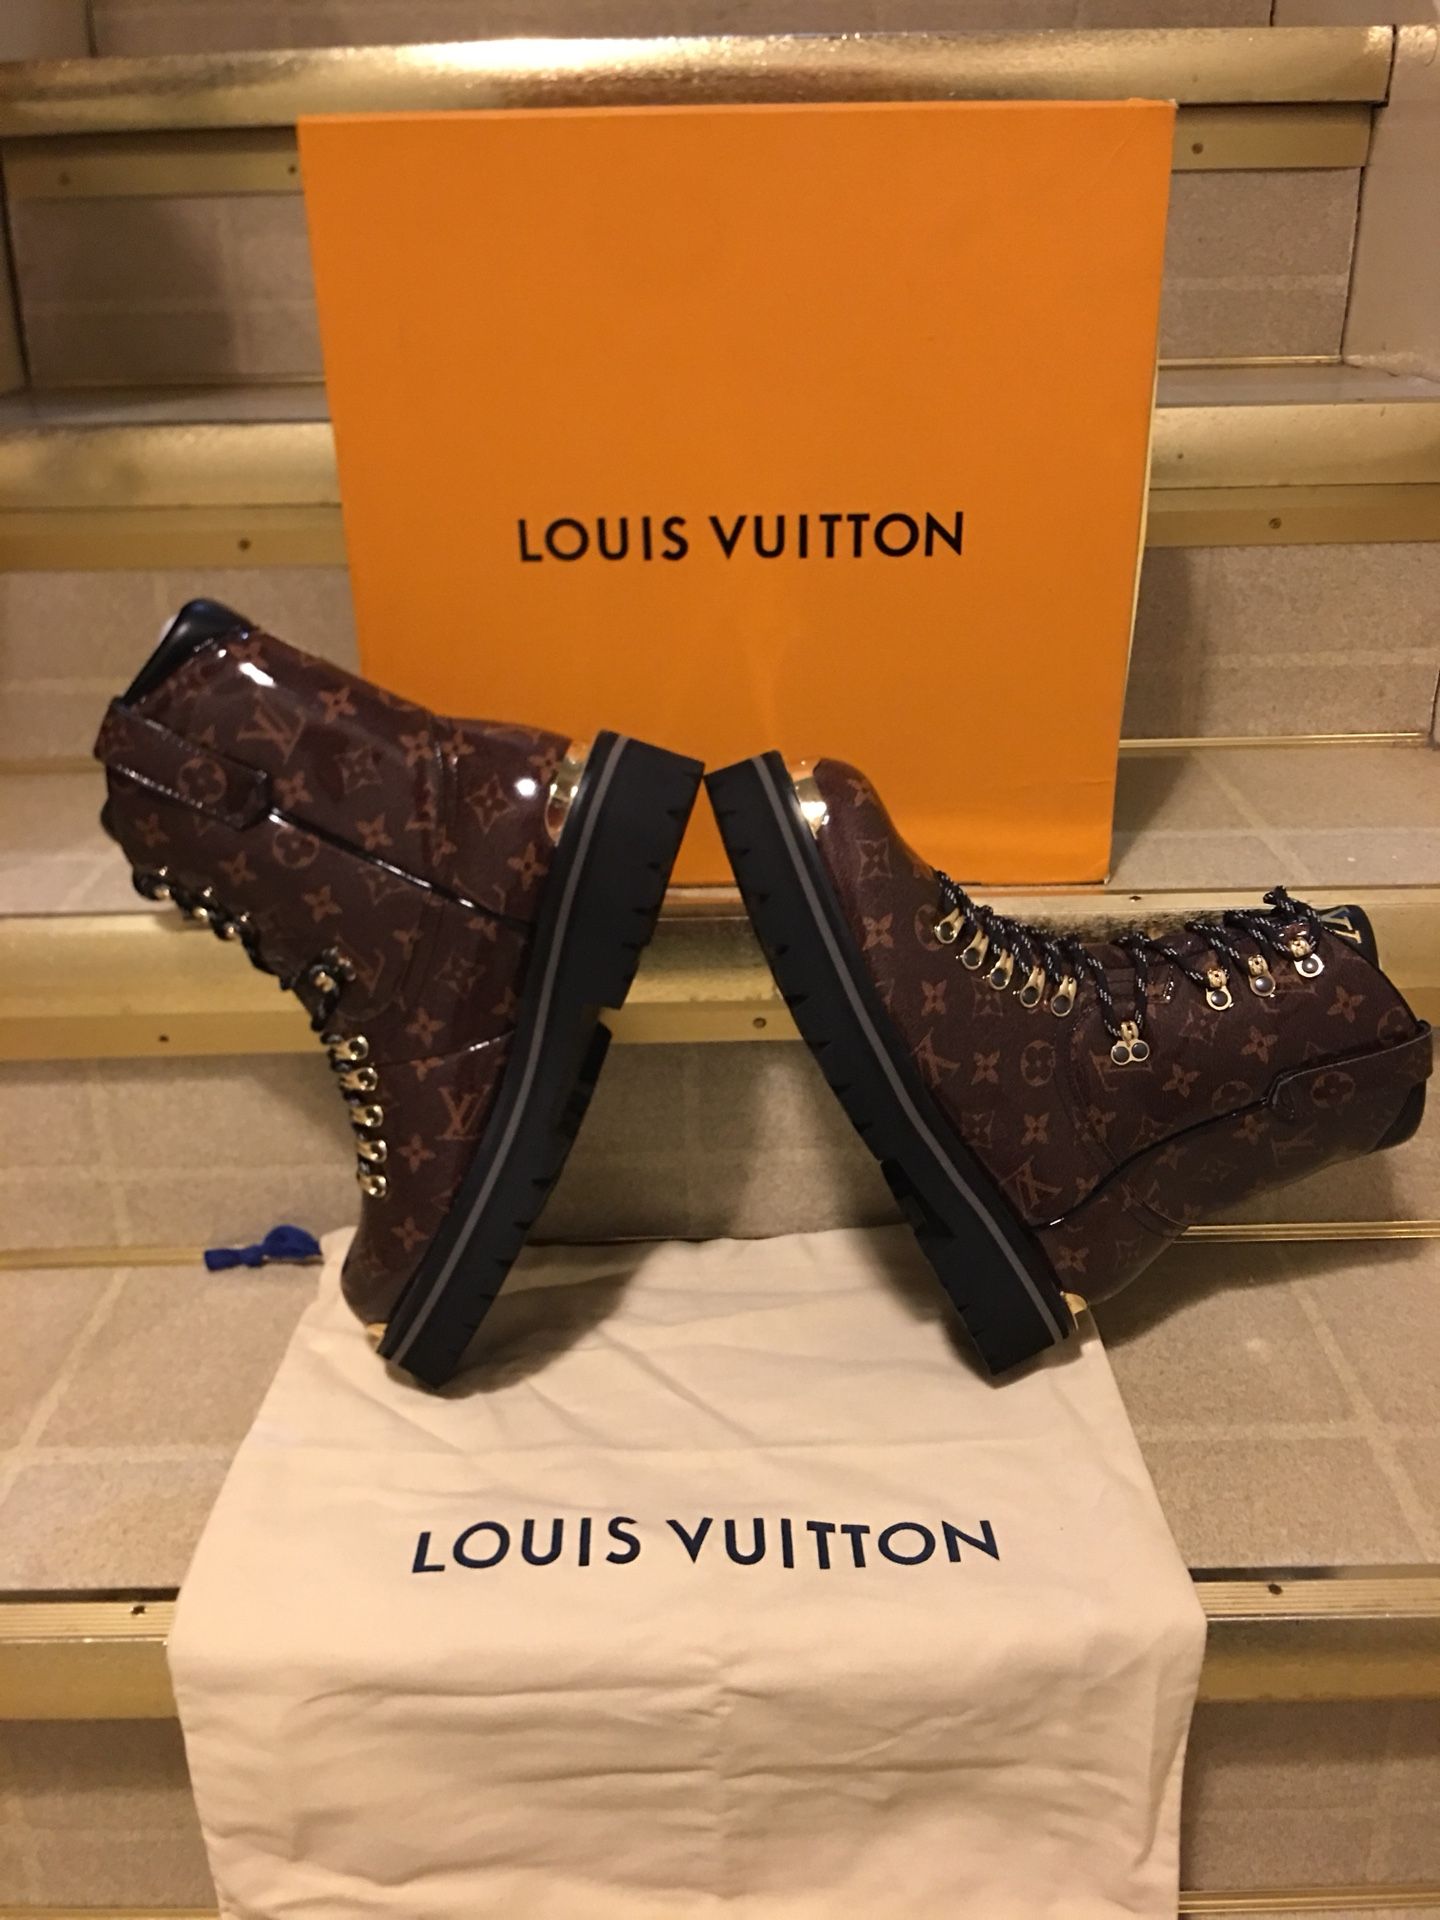 LOUIS VUITTON Outland Line Ankle Boots Shoes 1A4K2J